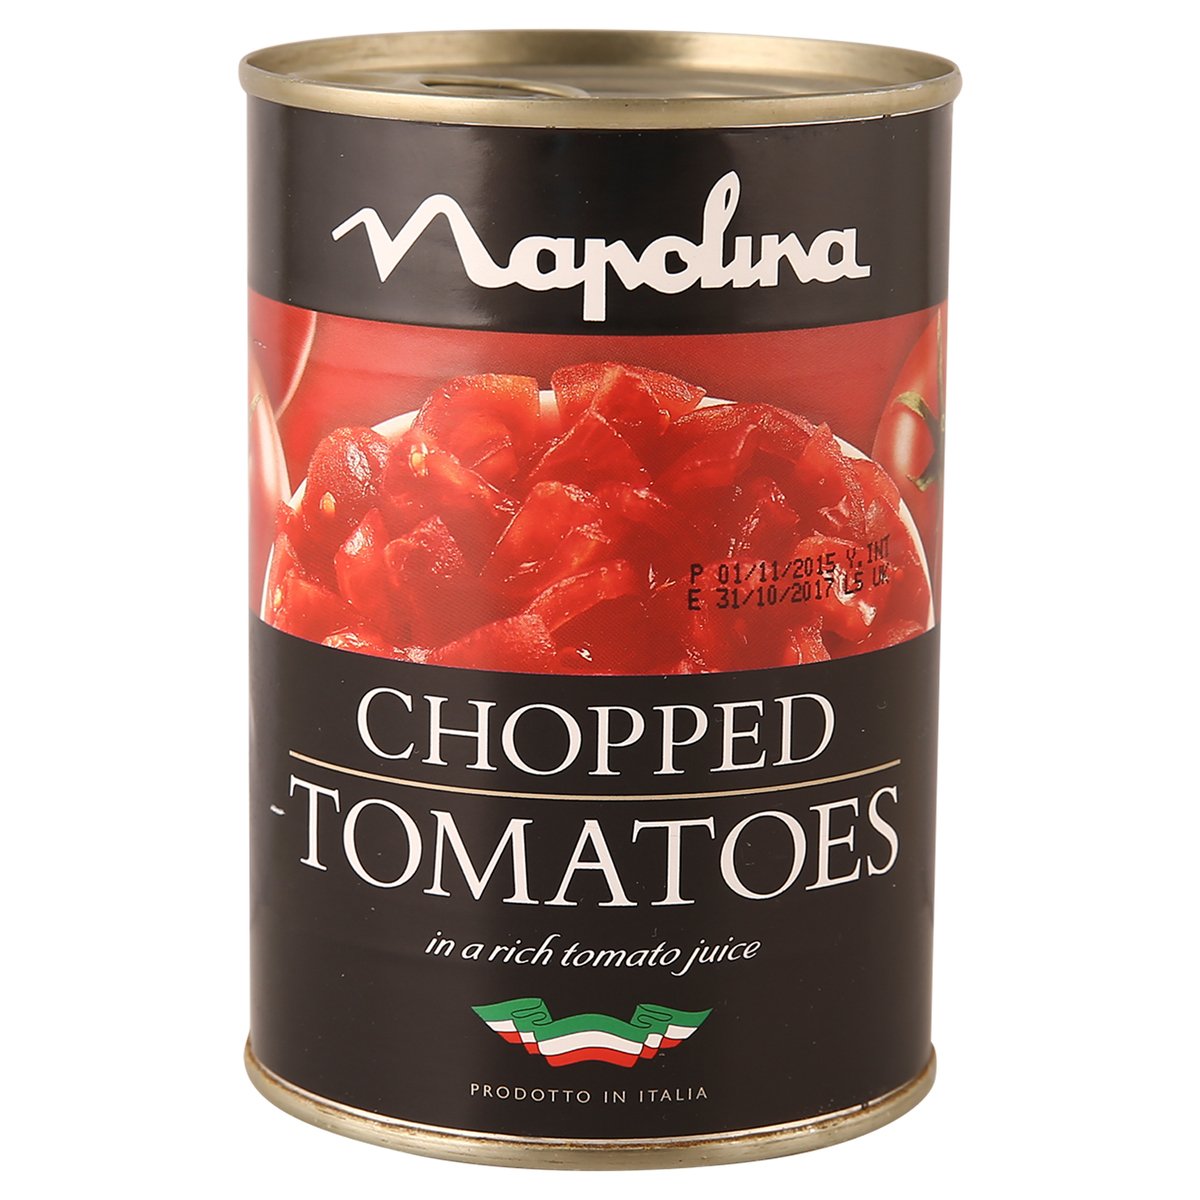 نابولينا طماطم مقطعة في عصير طماطم ٤٠٠ جم